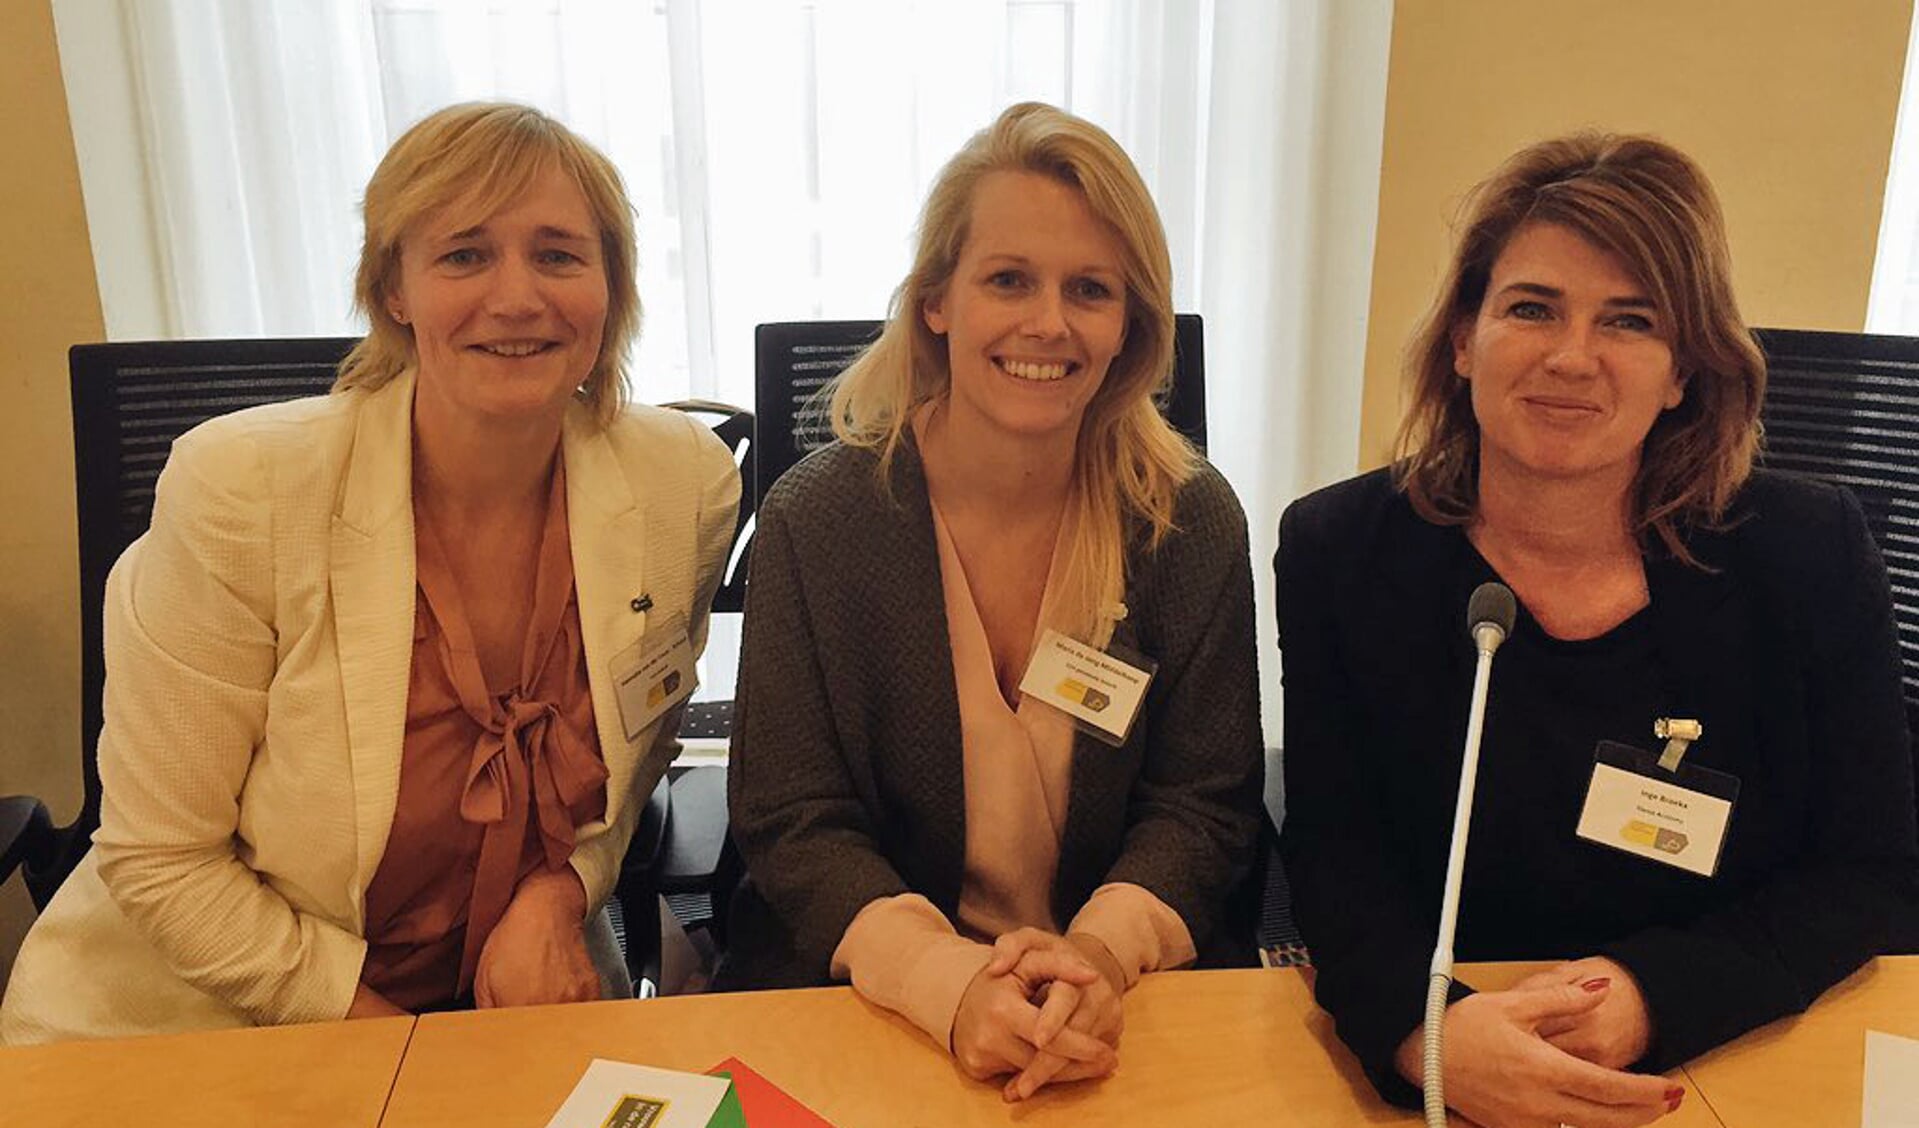 Hanneke van der Leun, Maria de Jong-Middelkoop en Inge Broekx (PvdA-raadslid Vianen).